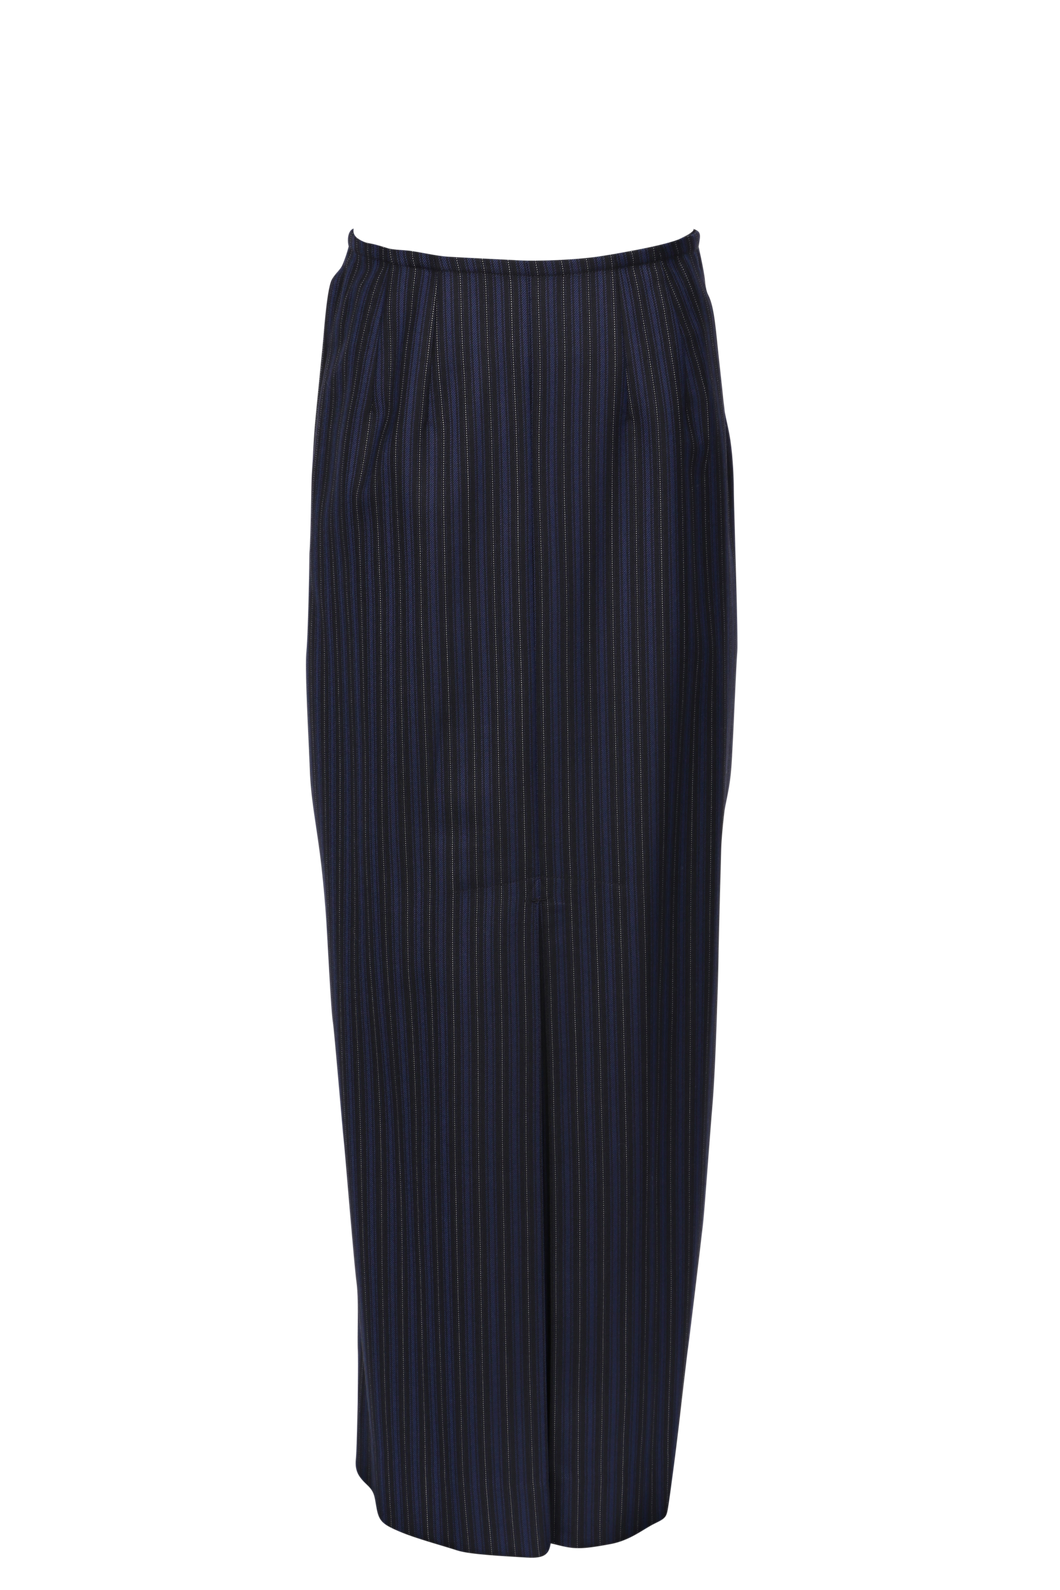 Formal/Winter Long Skirt (SKC) (OBSOLETE)